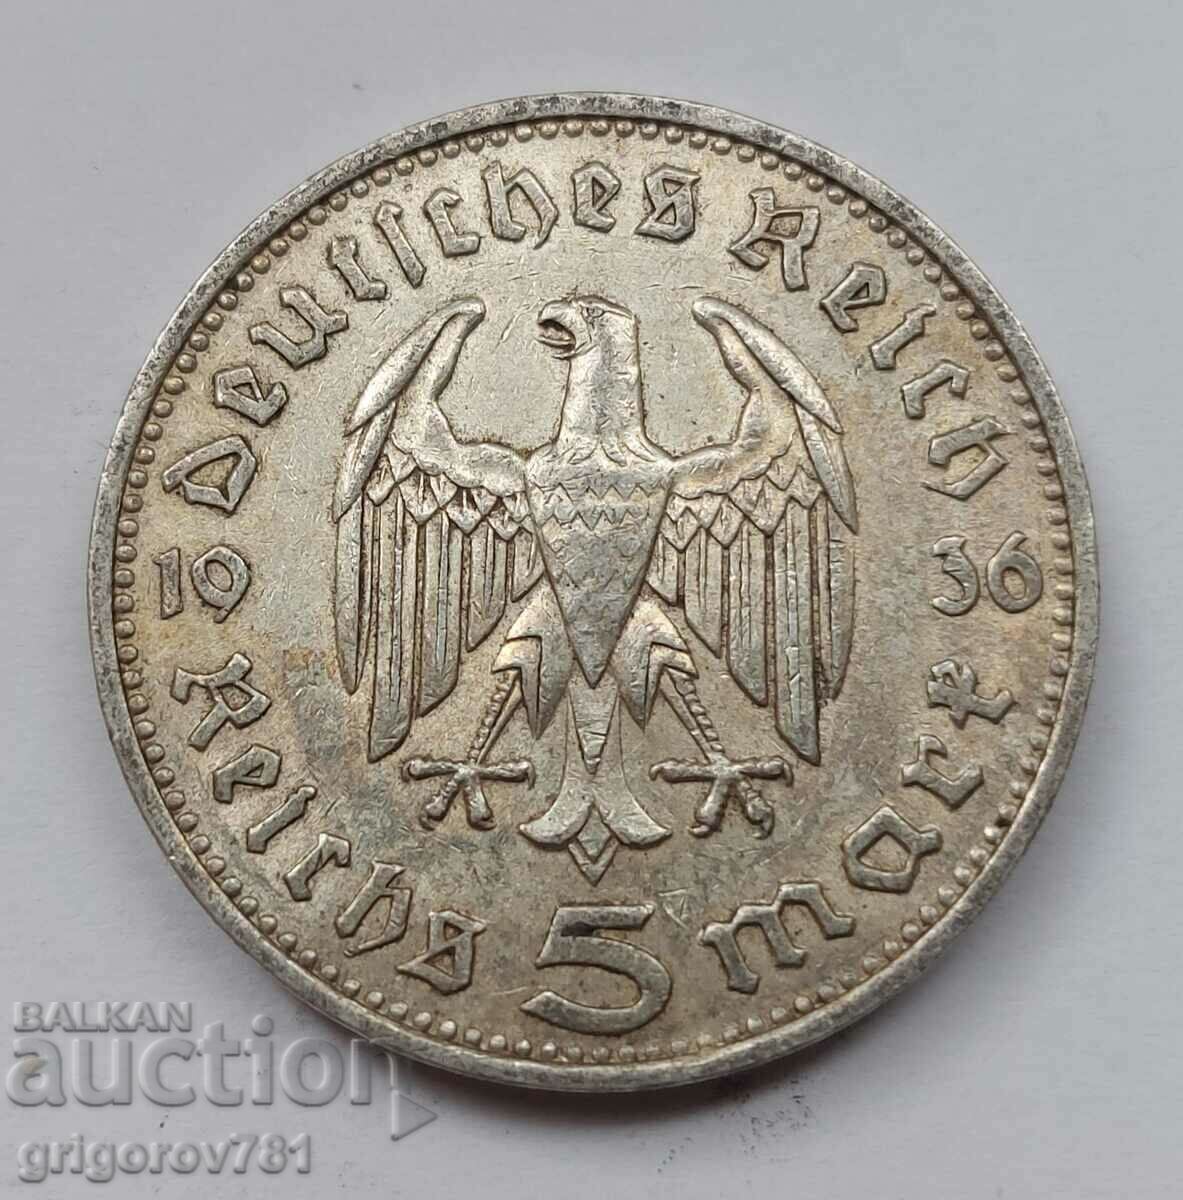 Moneda de argint 5 marci Germania 1936 F III Reich #11